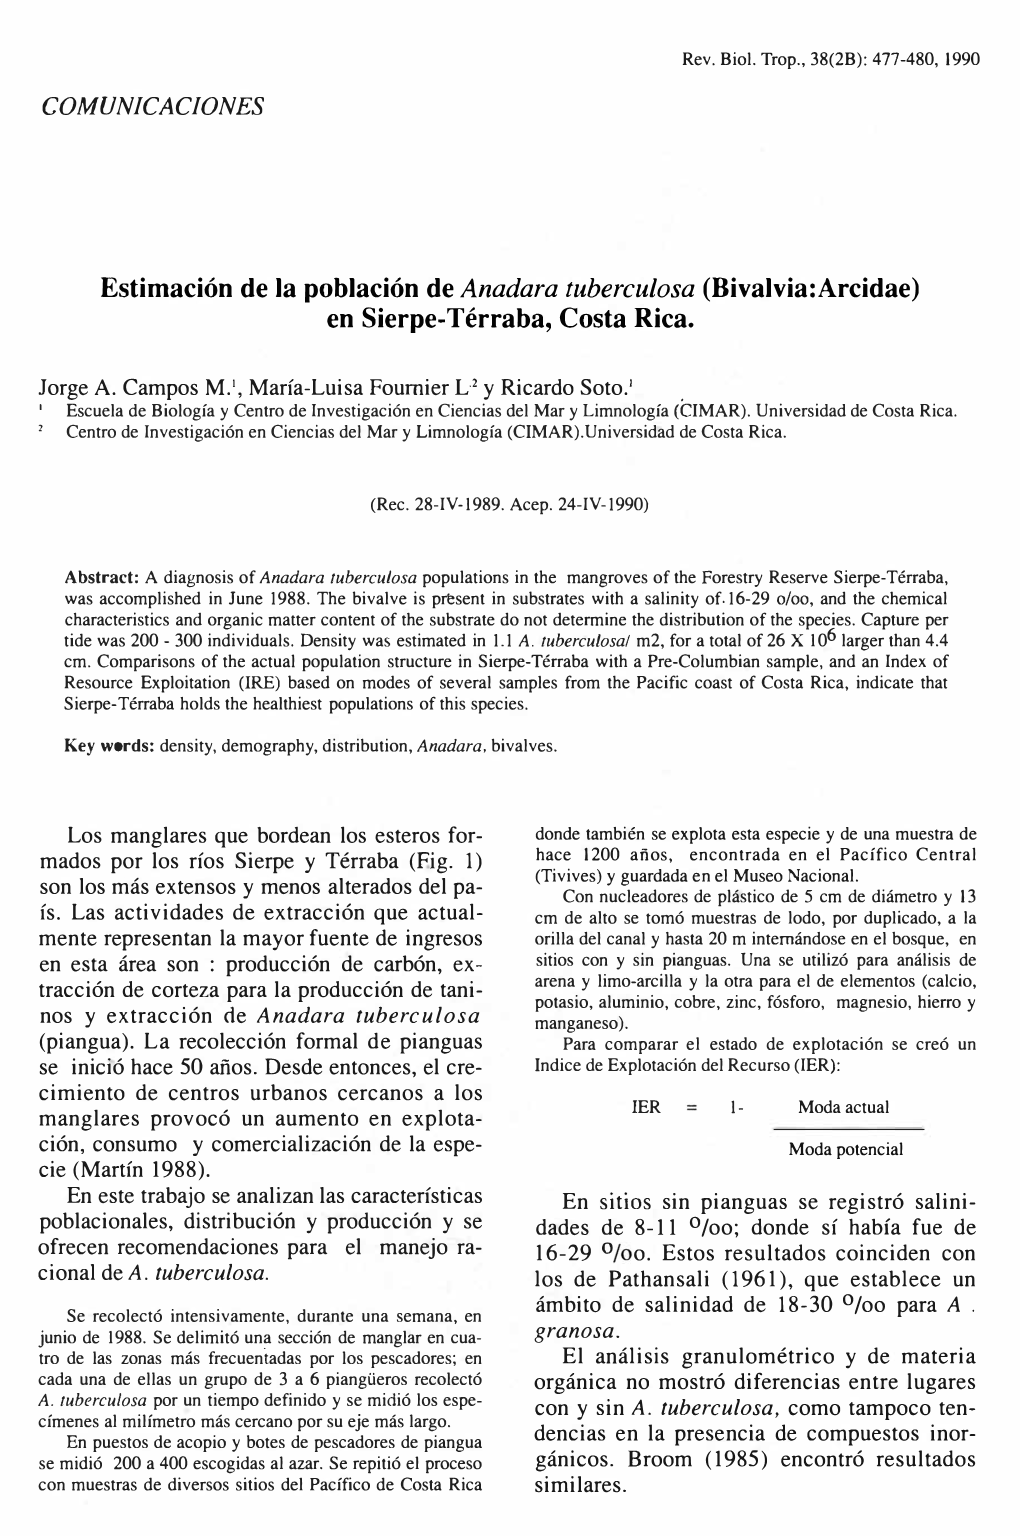 Estimación De La Población De Anadara Tuberculosa (Bivalvia:Arcidae) En Sierpe-Térraba, Costa Rica